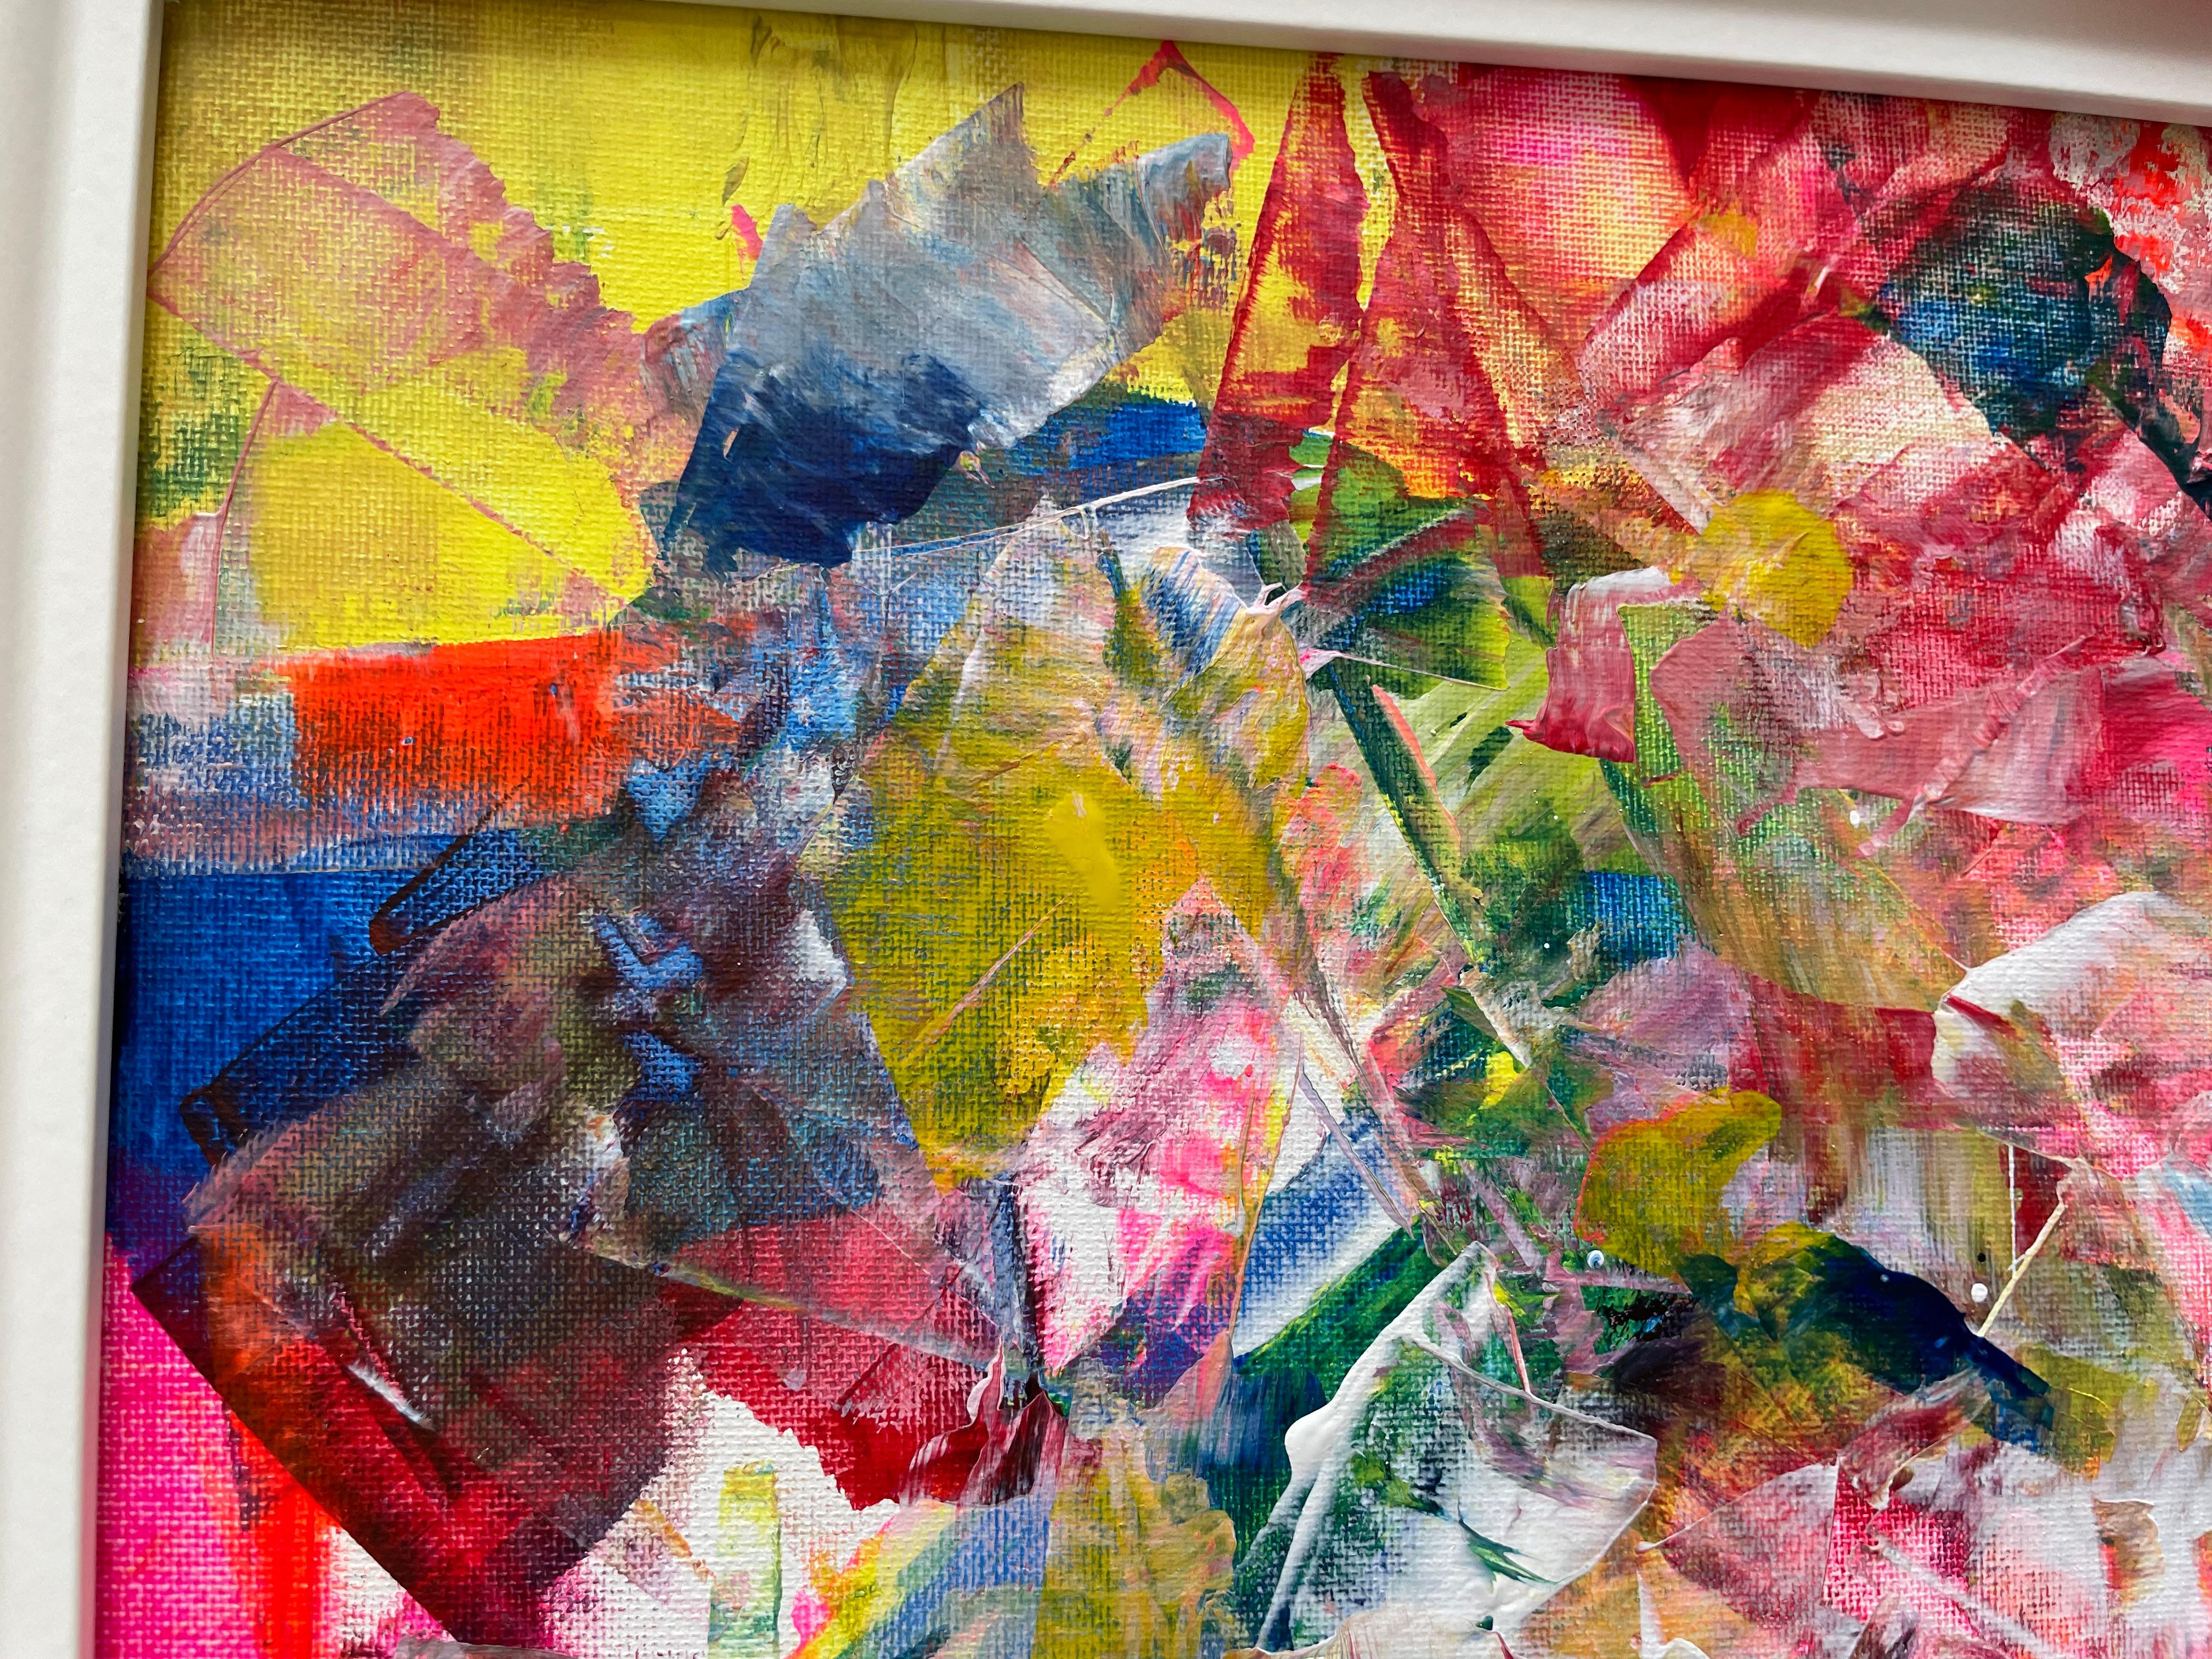 Imaginar es Real 03 - Painting Expresionismo abstracto de Juan Jose Garay